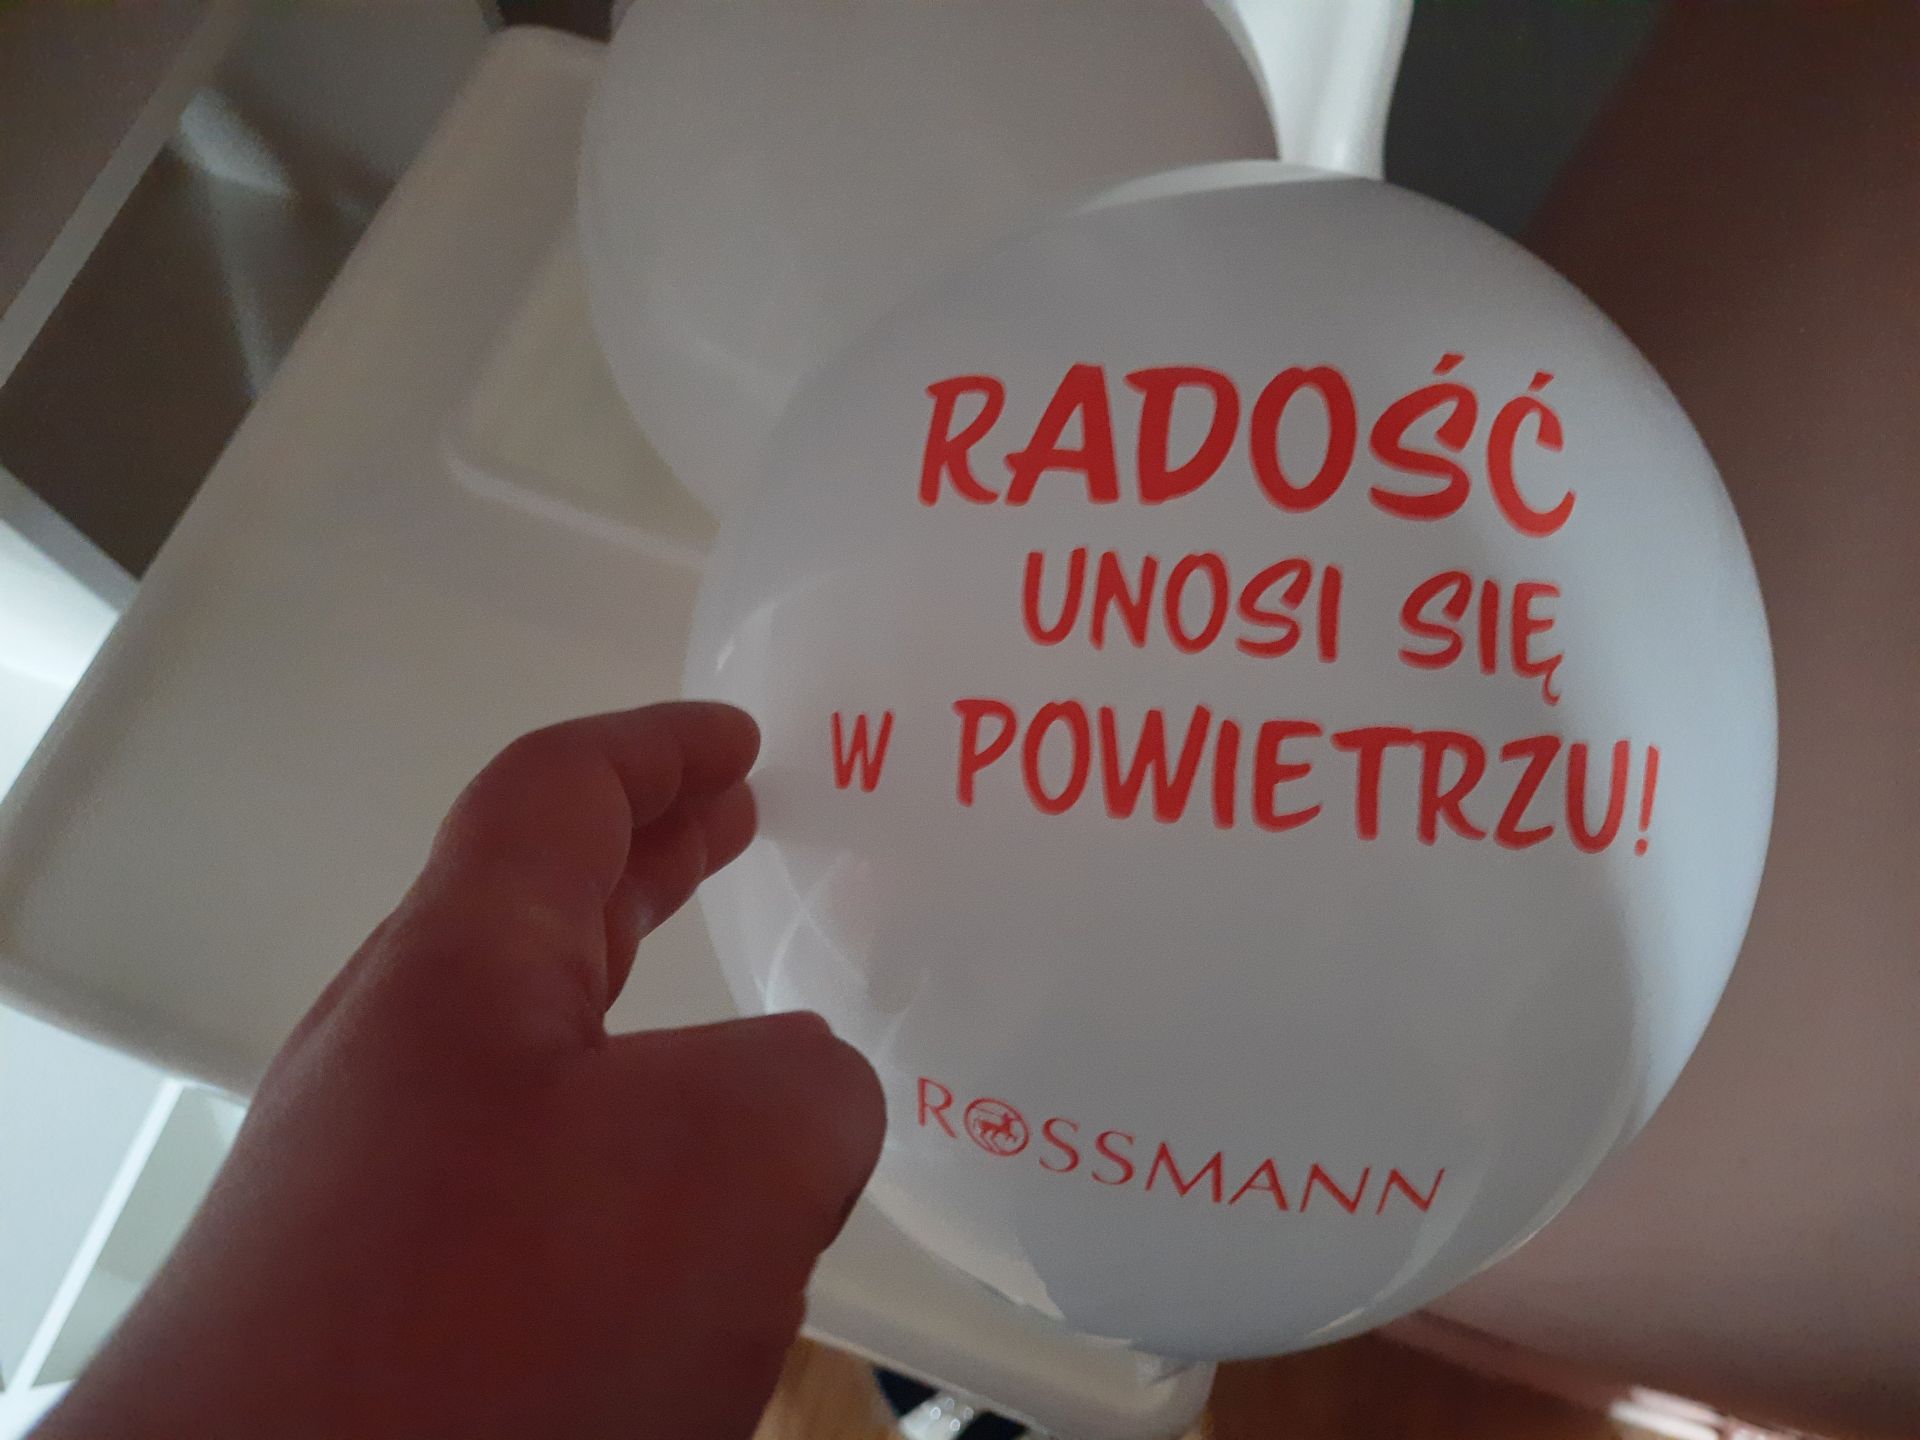 You are currently viewing Podziękowania sieci sklepów Rossmann